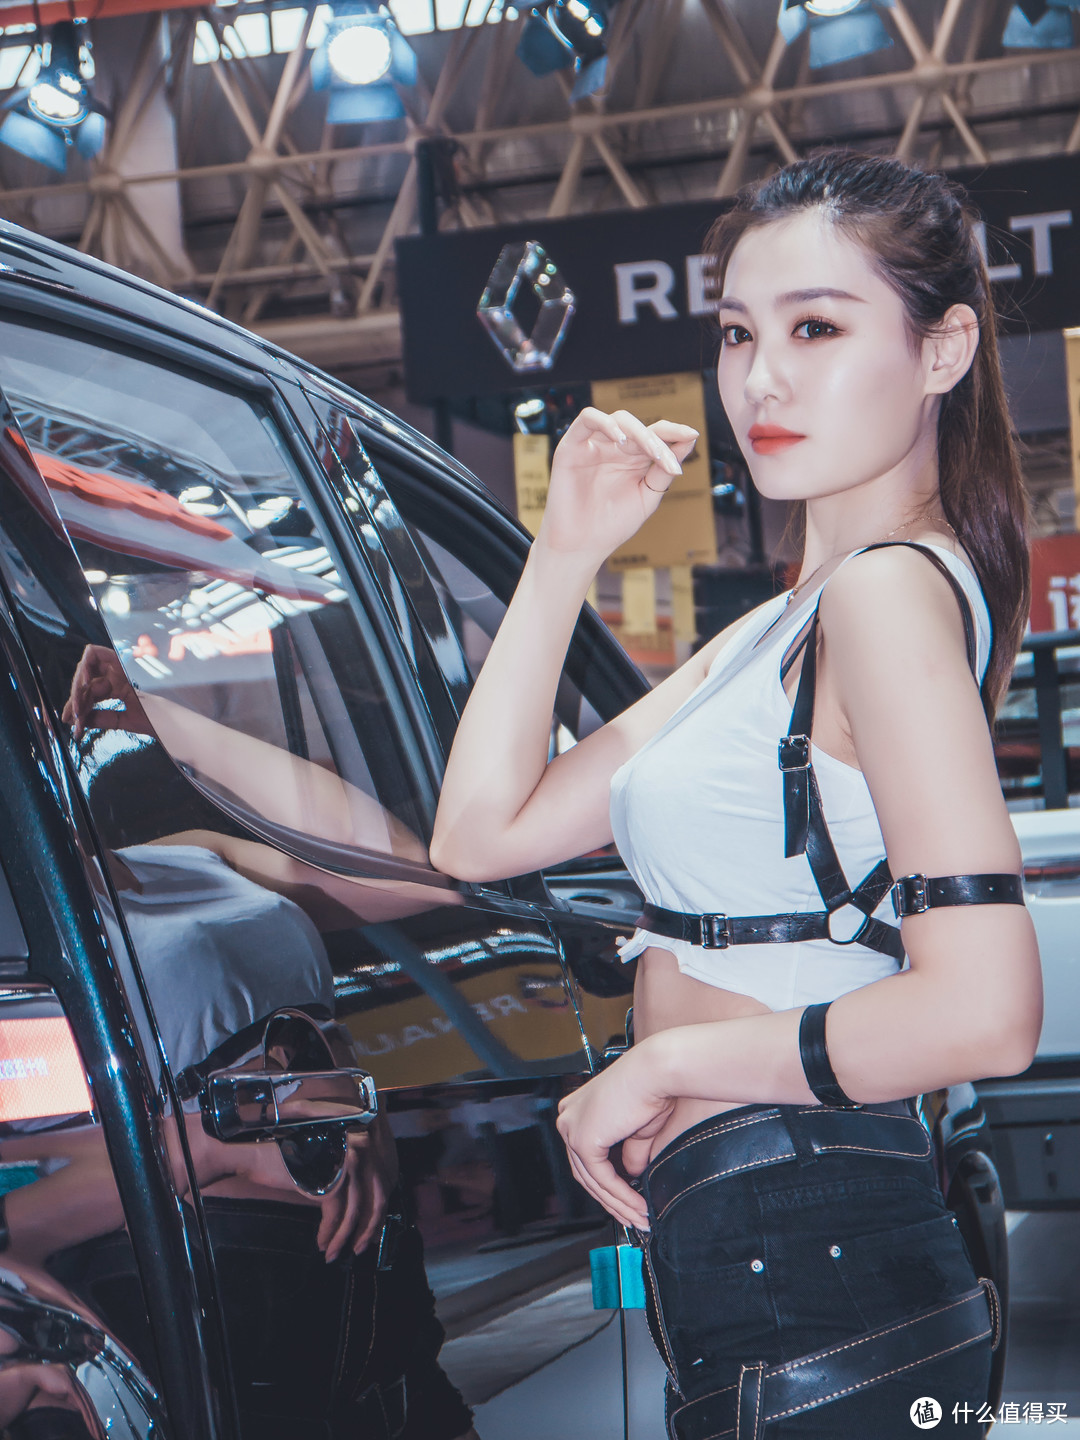 ”8打了逛2018华中国际汽车展的名号，当然是为了看这些...给你个眼神自己领会